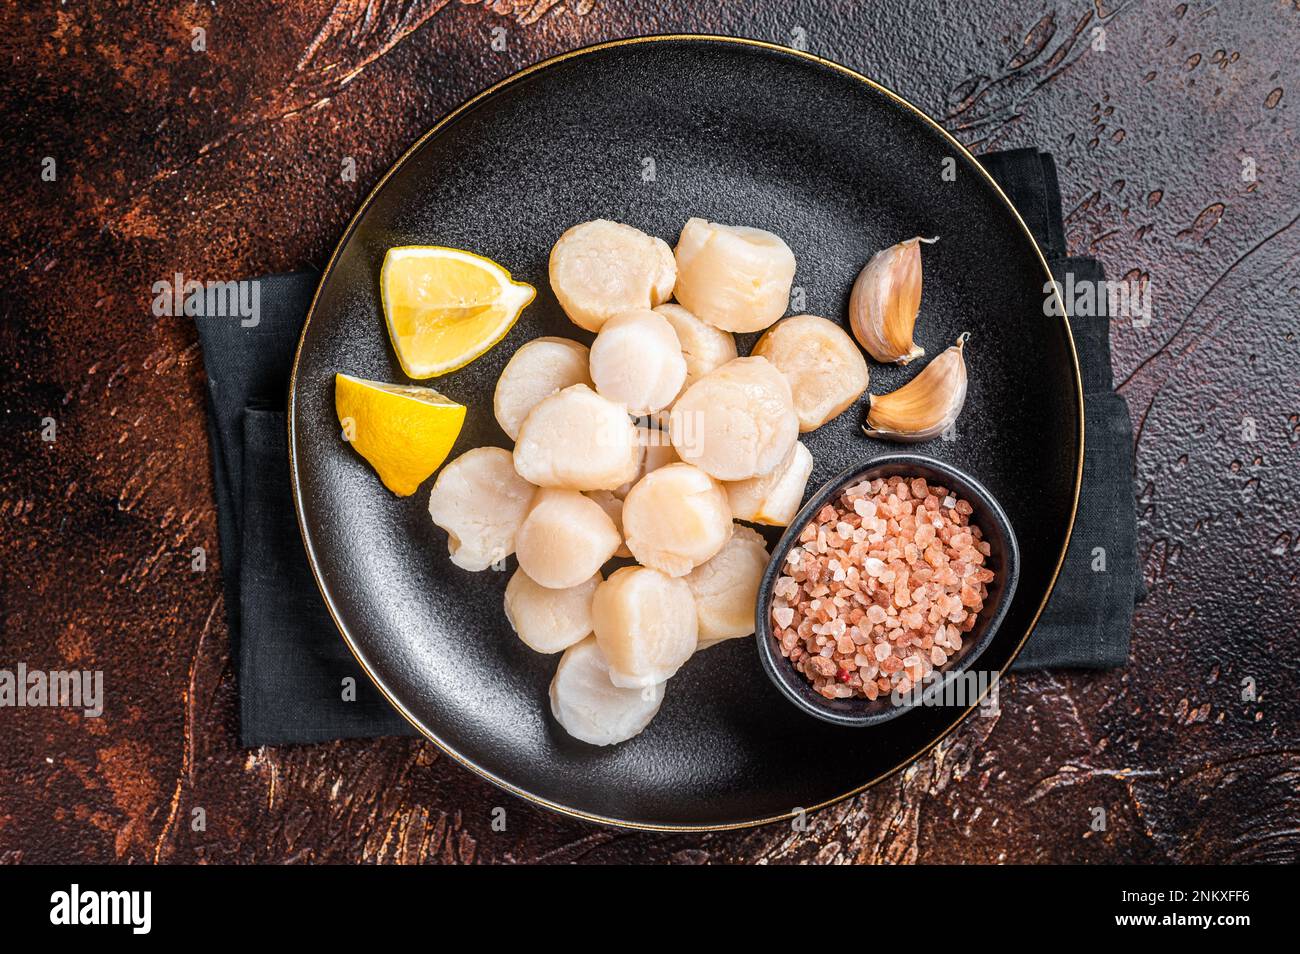 Fruits de mer crus de Saint-Jacques sur une assiette de sel rose et de citron. Arrière-plan sombre. Vue de dessus. Banque D'Images